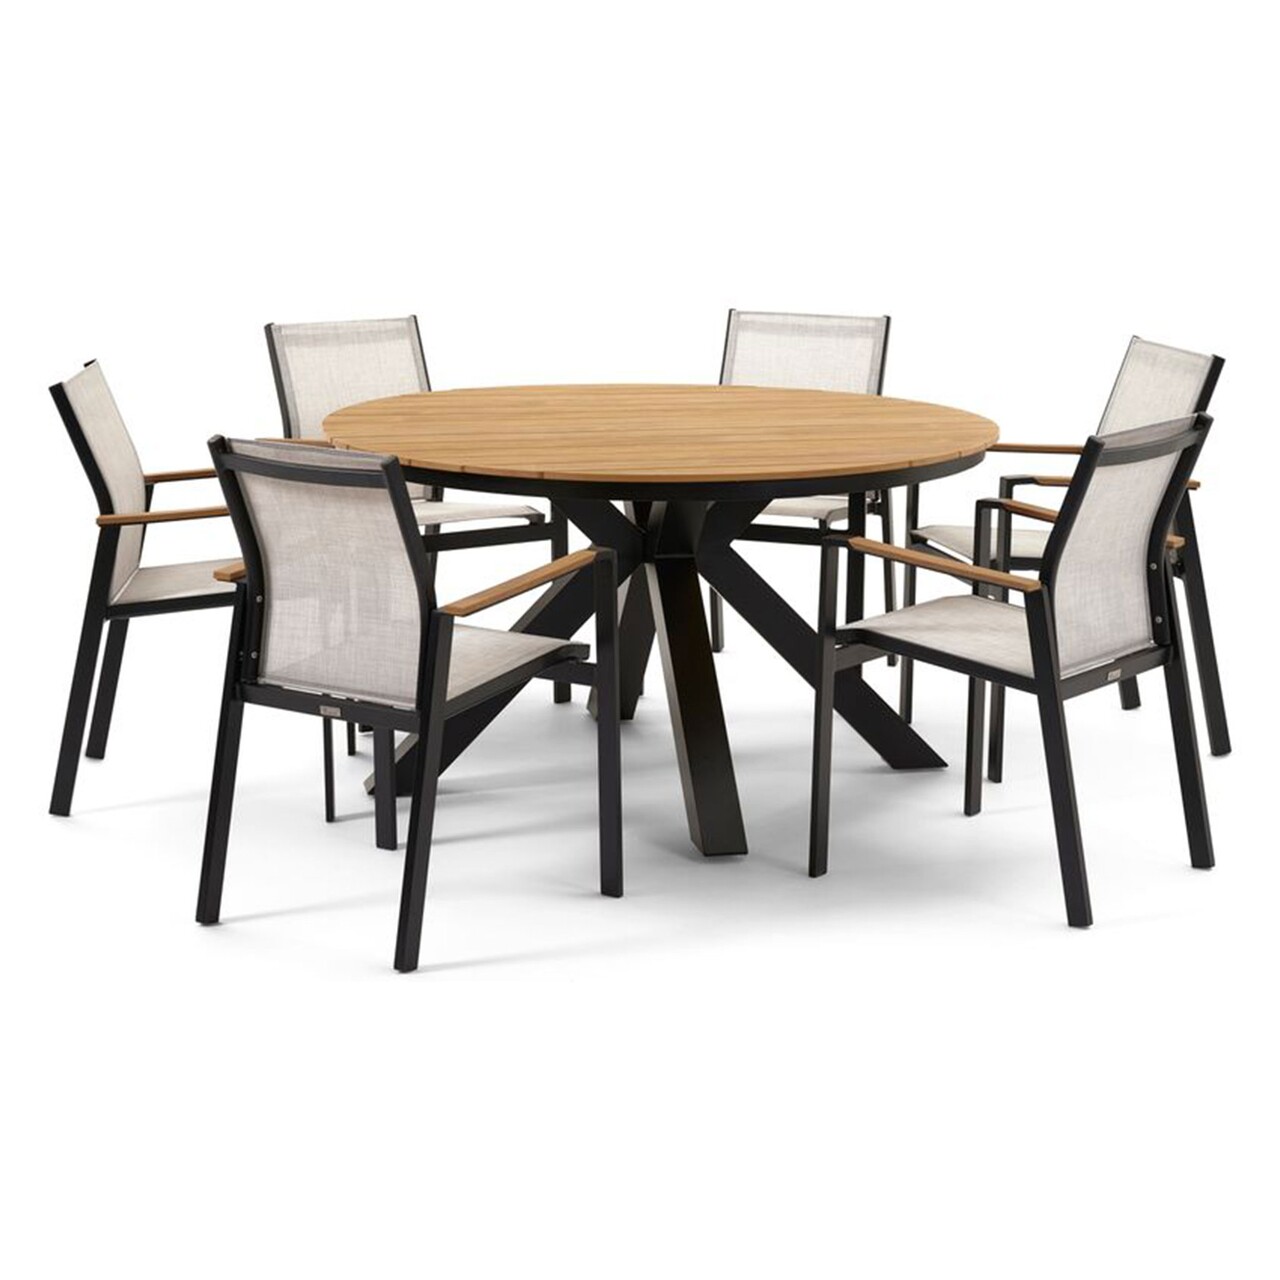 Maison bahia asztal 6 db székkel, alumínium, fekete/szürke/természetes